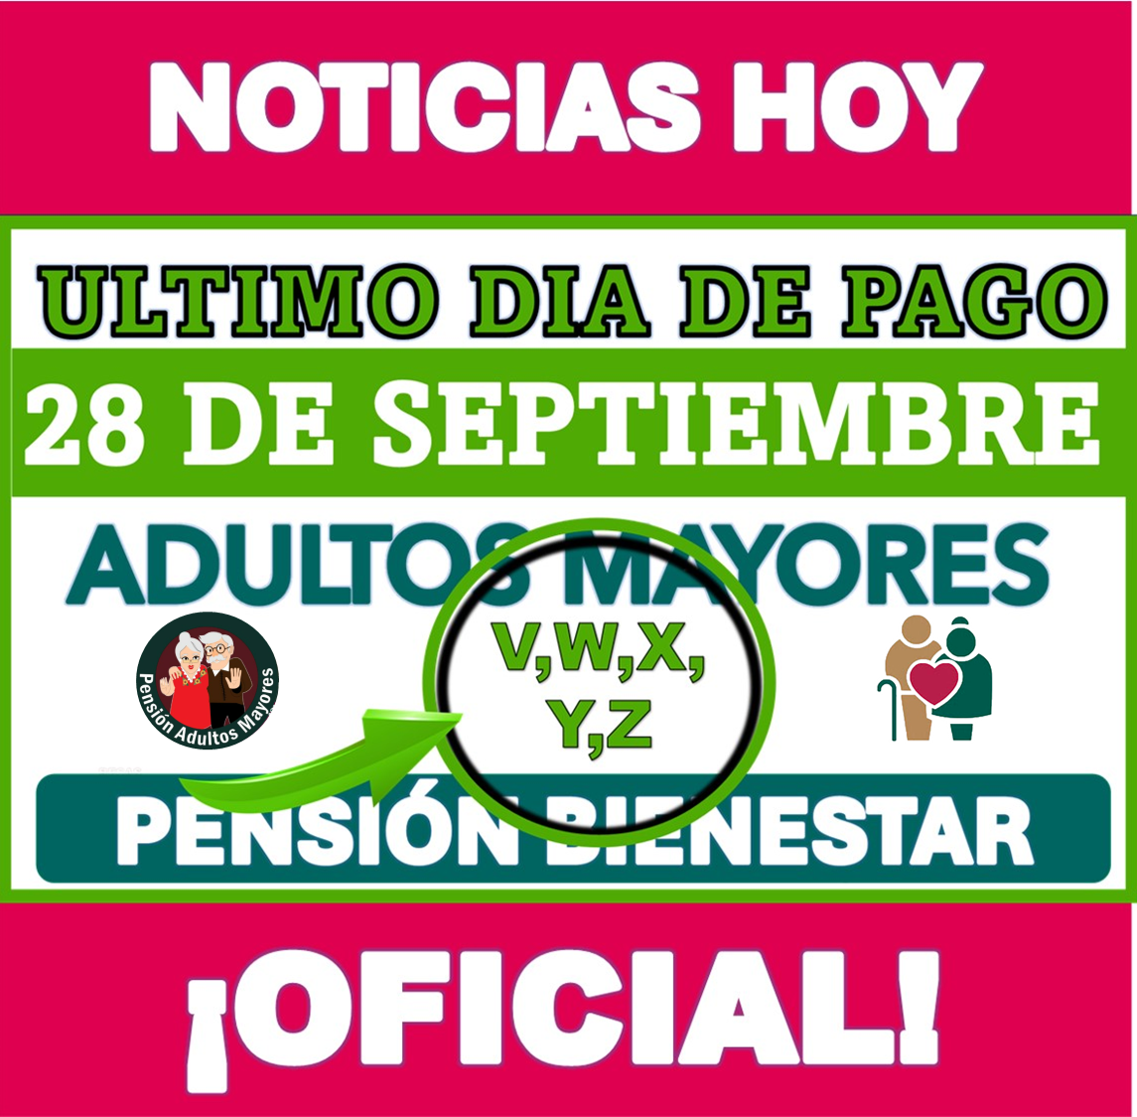  Jueves 28 de Septiembre último día de pago Pensión Adultos Mayores para estas últimas cinco letras ¡ÚLTIMA LLAMADA!